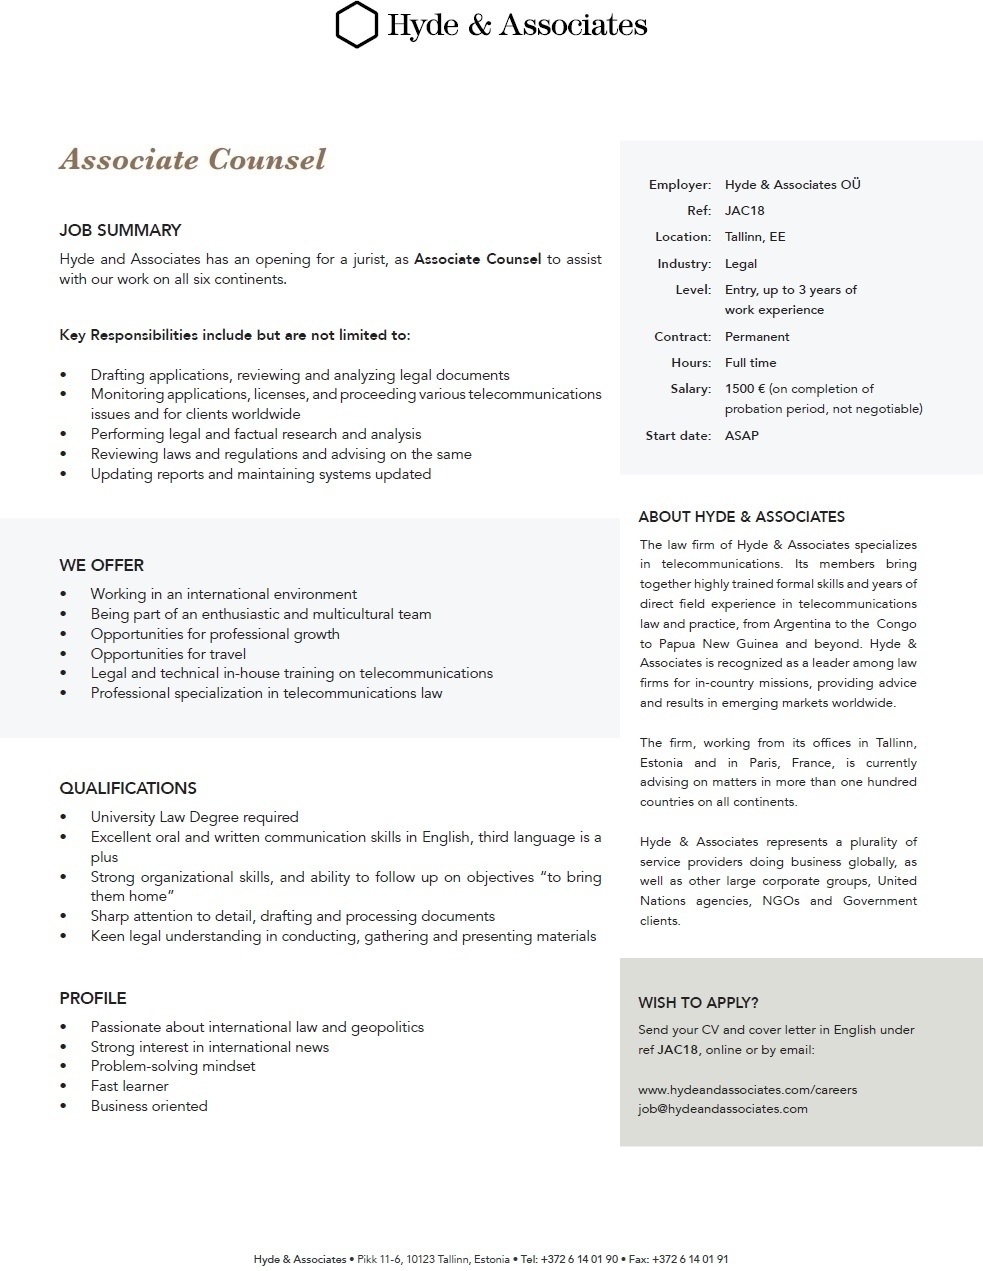 Hyde & Associates, OU Associate Counsel